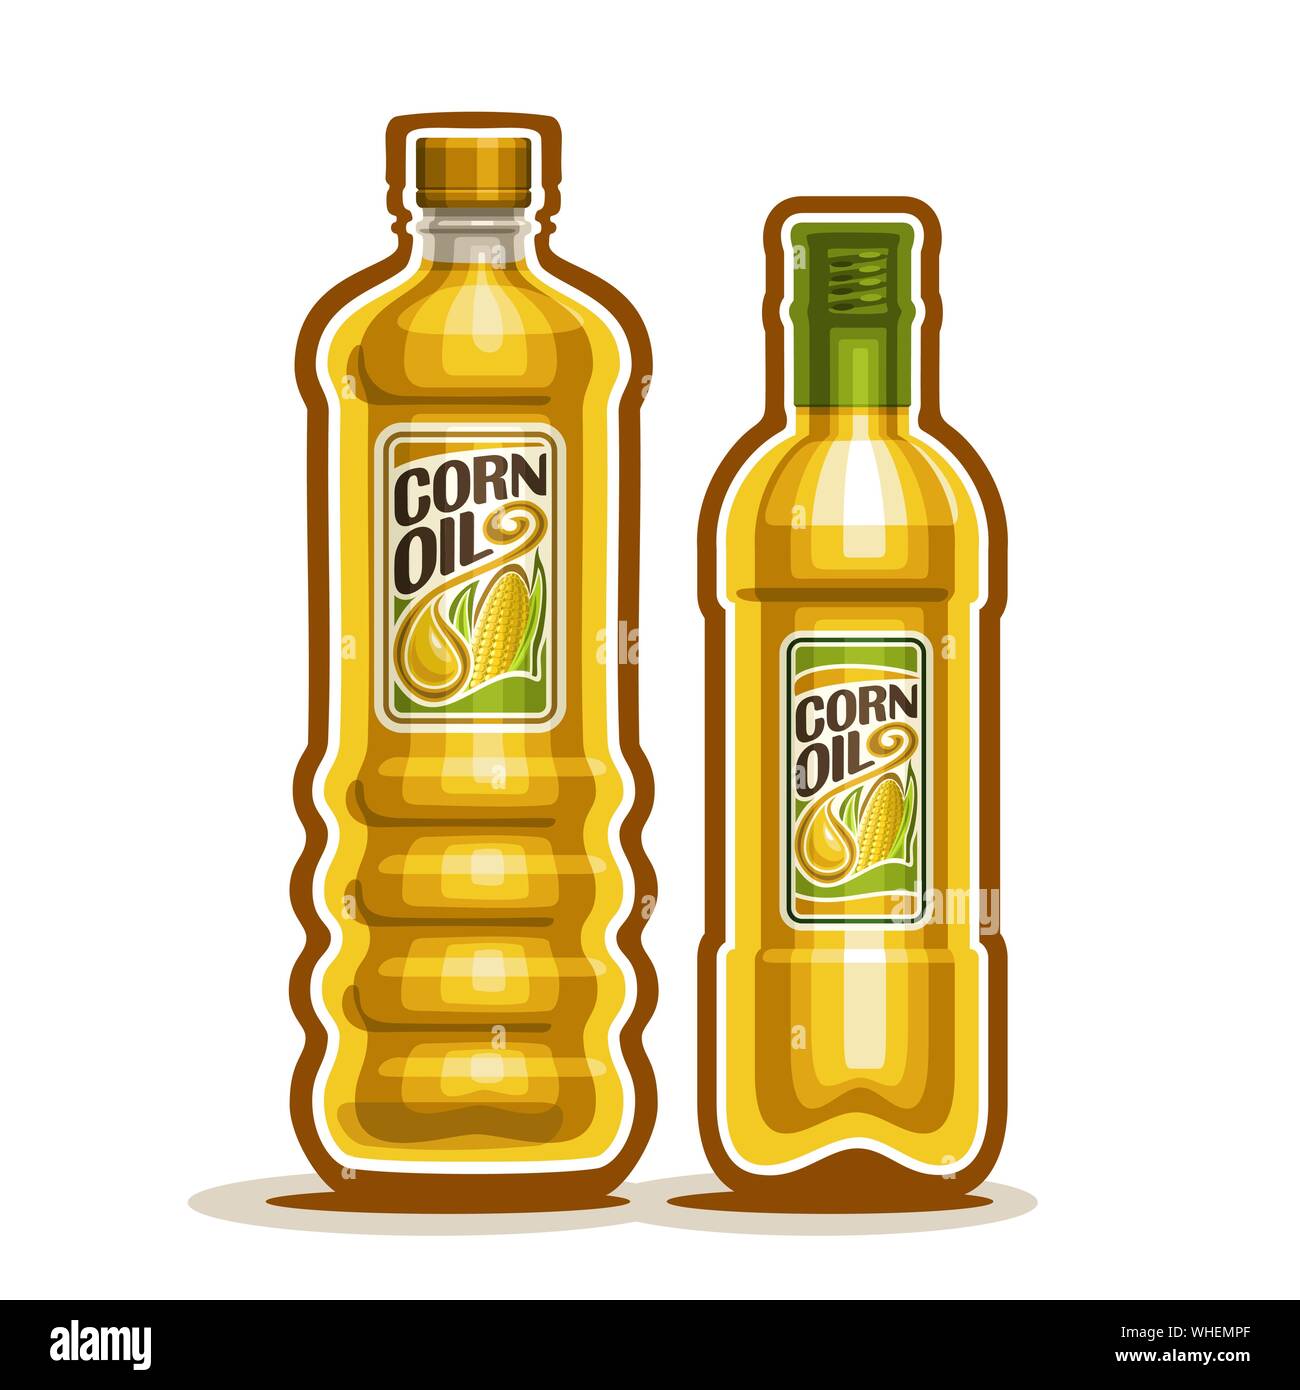 Vector et des bouteilles en verre en plastique jaune avec de l'huile de maïs pure et de l'étiquette des bouteilles, vierge raffinée de l'huile de cuisson du maïs, caricature grand récipient avec viscocoupleur l Illustration de Vecteur